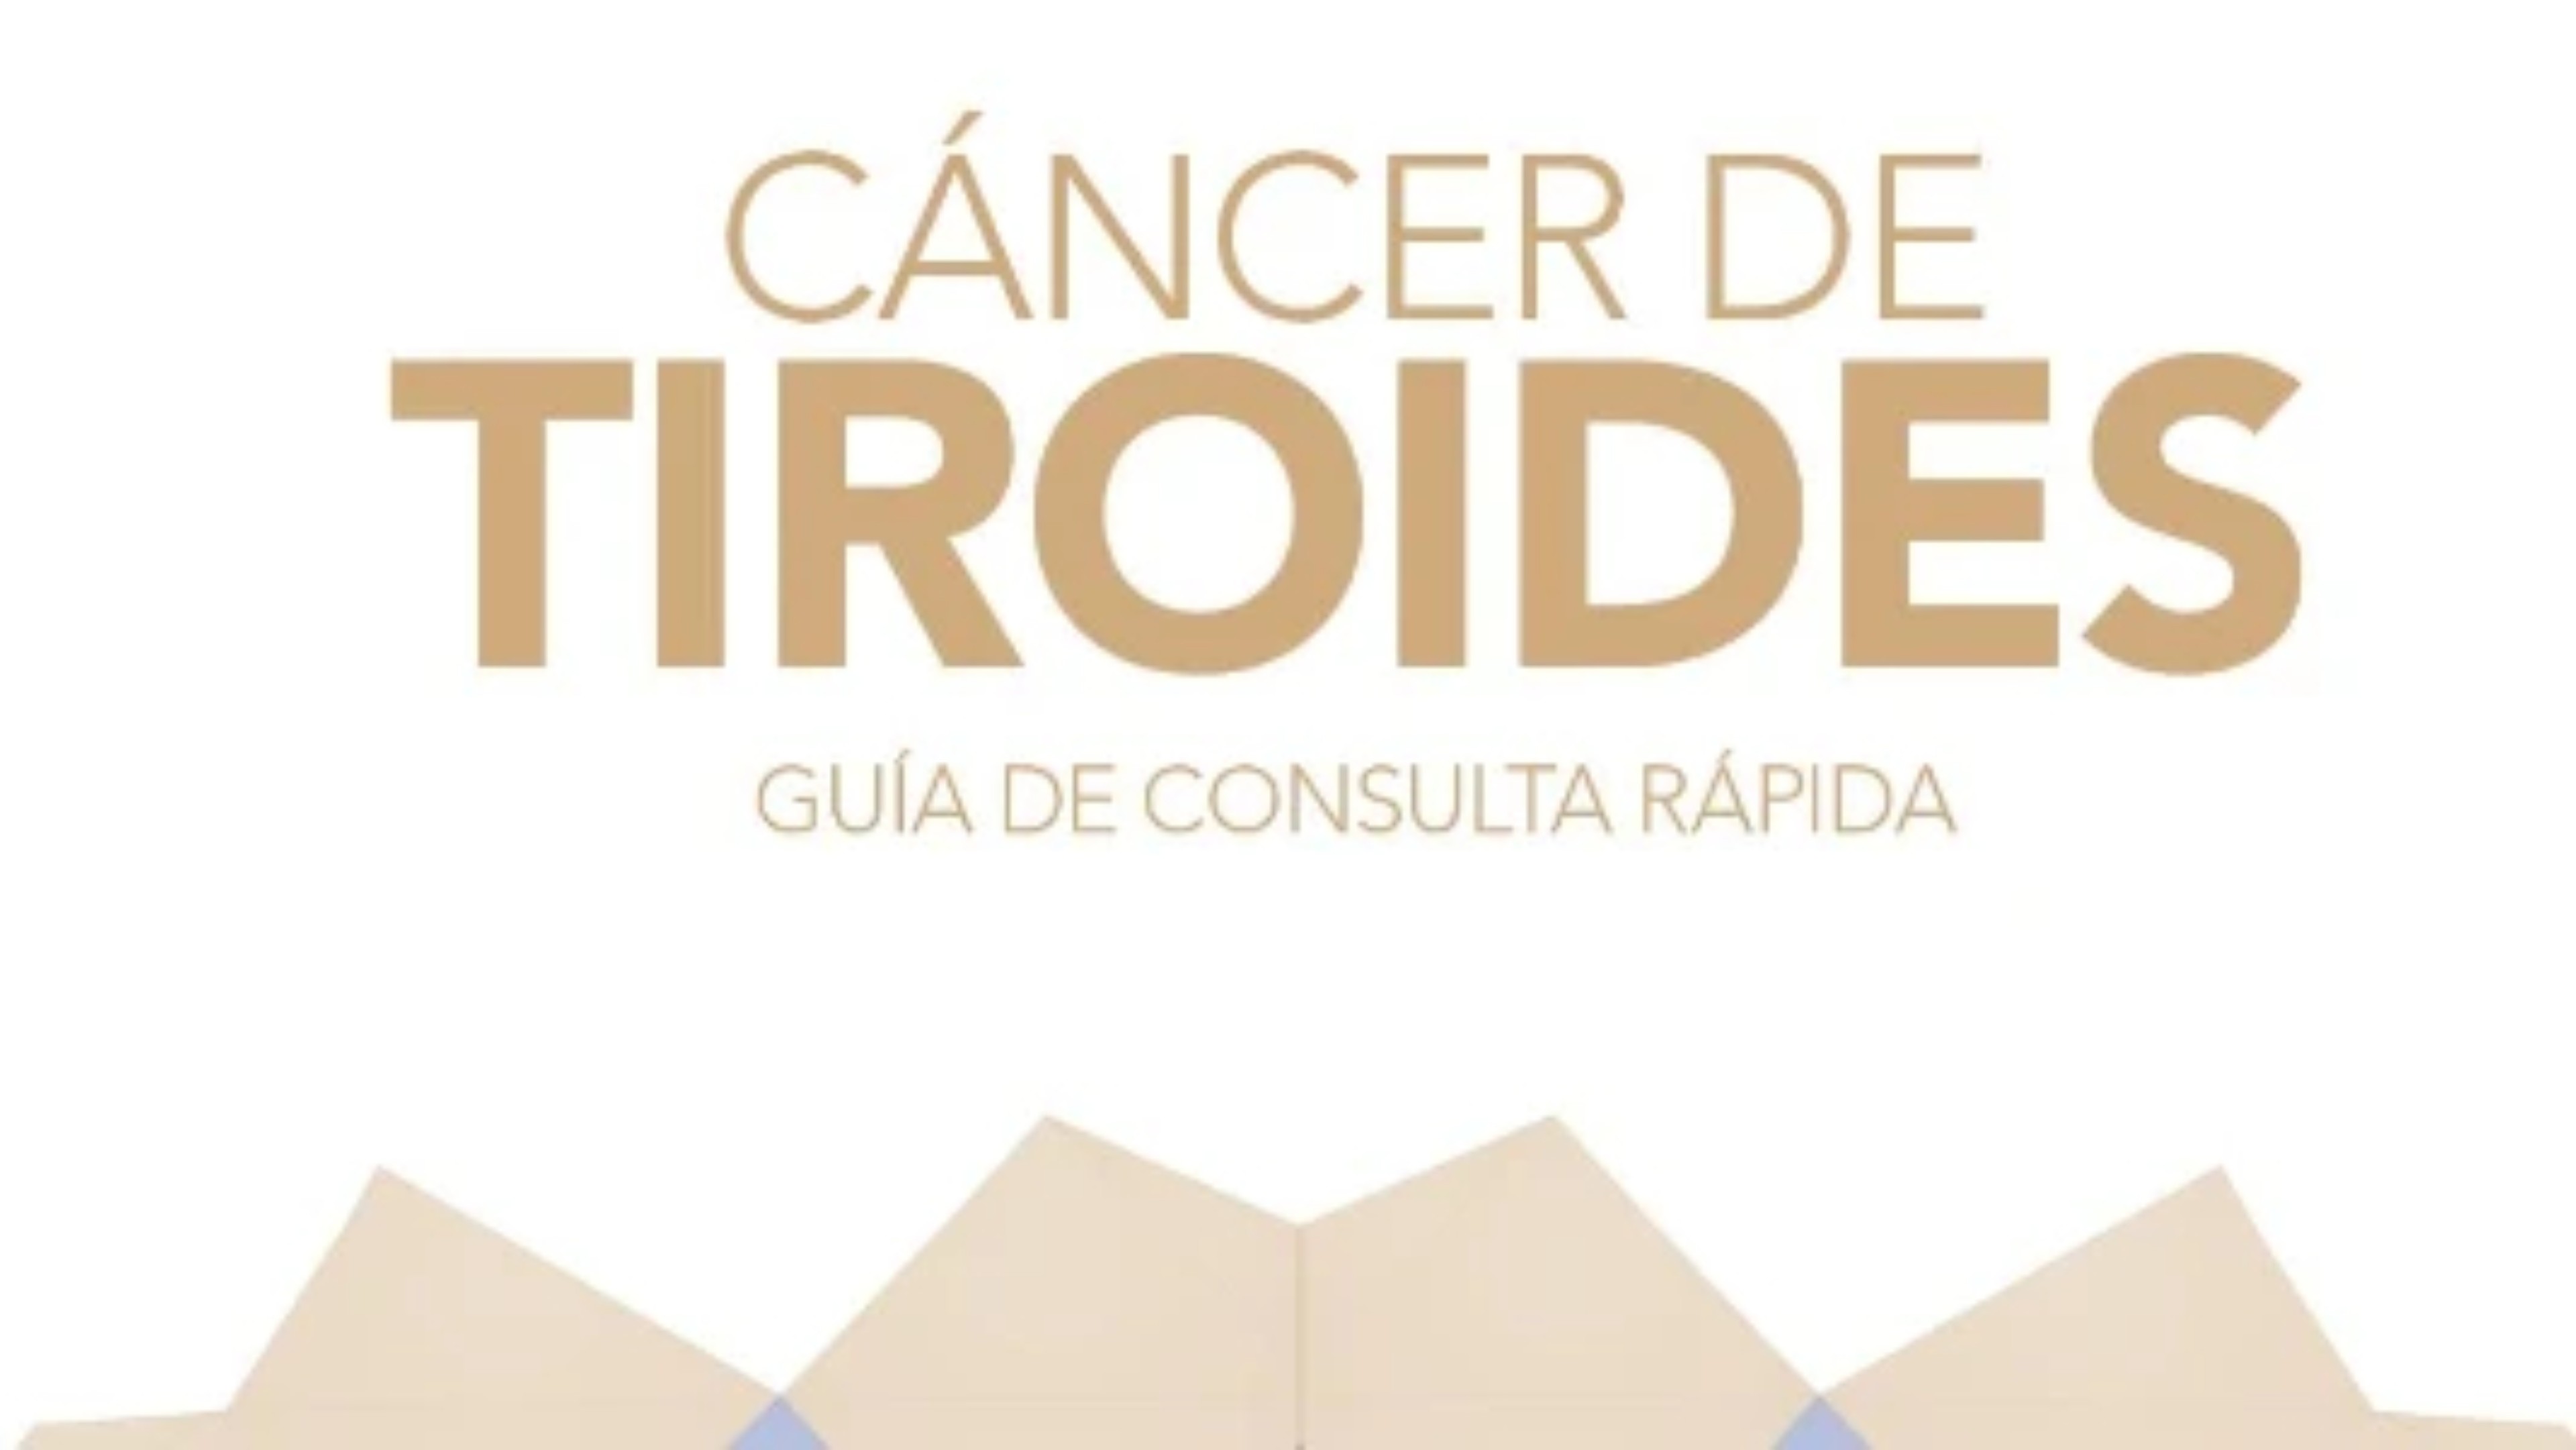 cancer-tiroides-guia-consulta-rapida-cancer